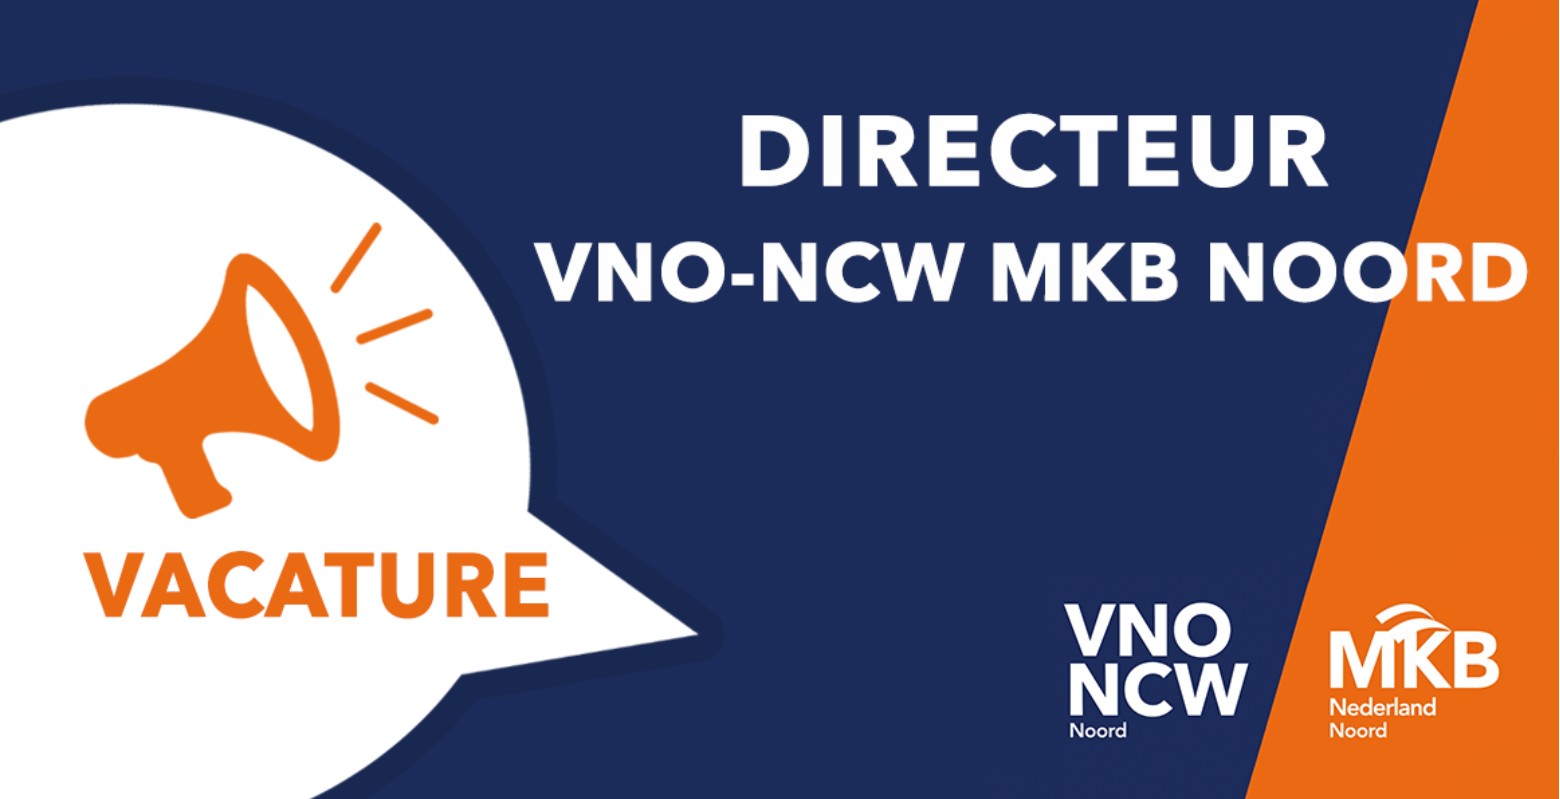 Afb 4: Vacature: Directeur VNO-NCW MKB Noord (gesloten)